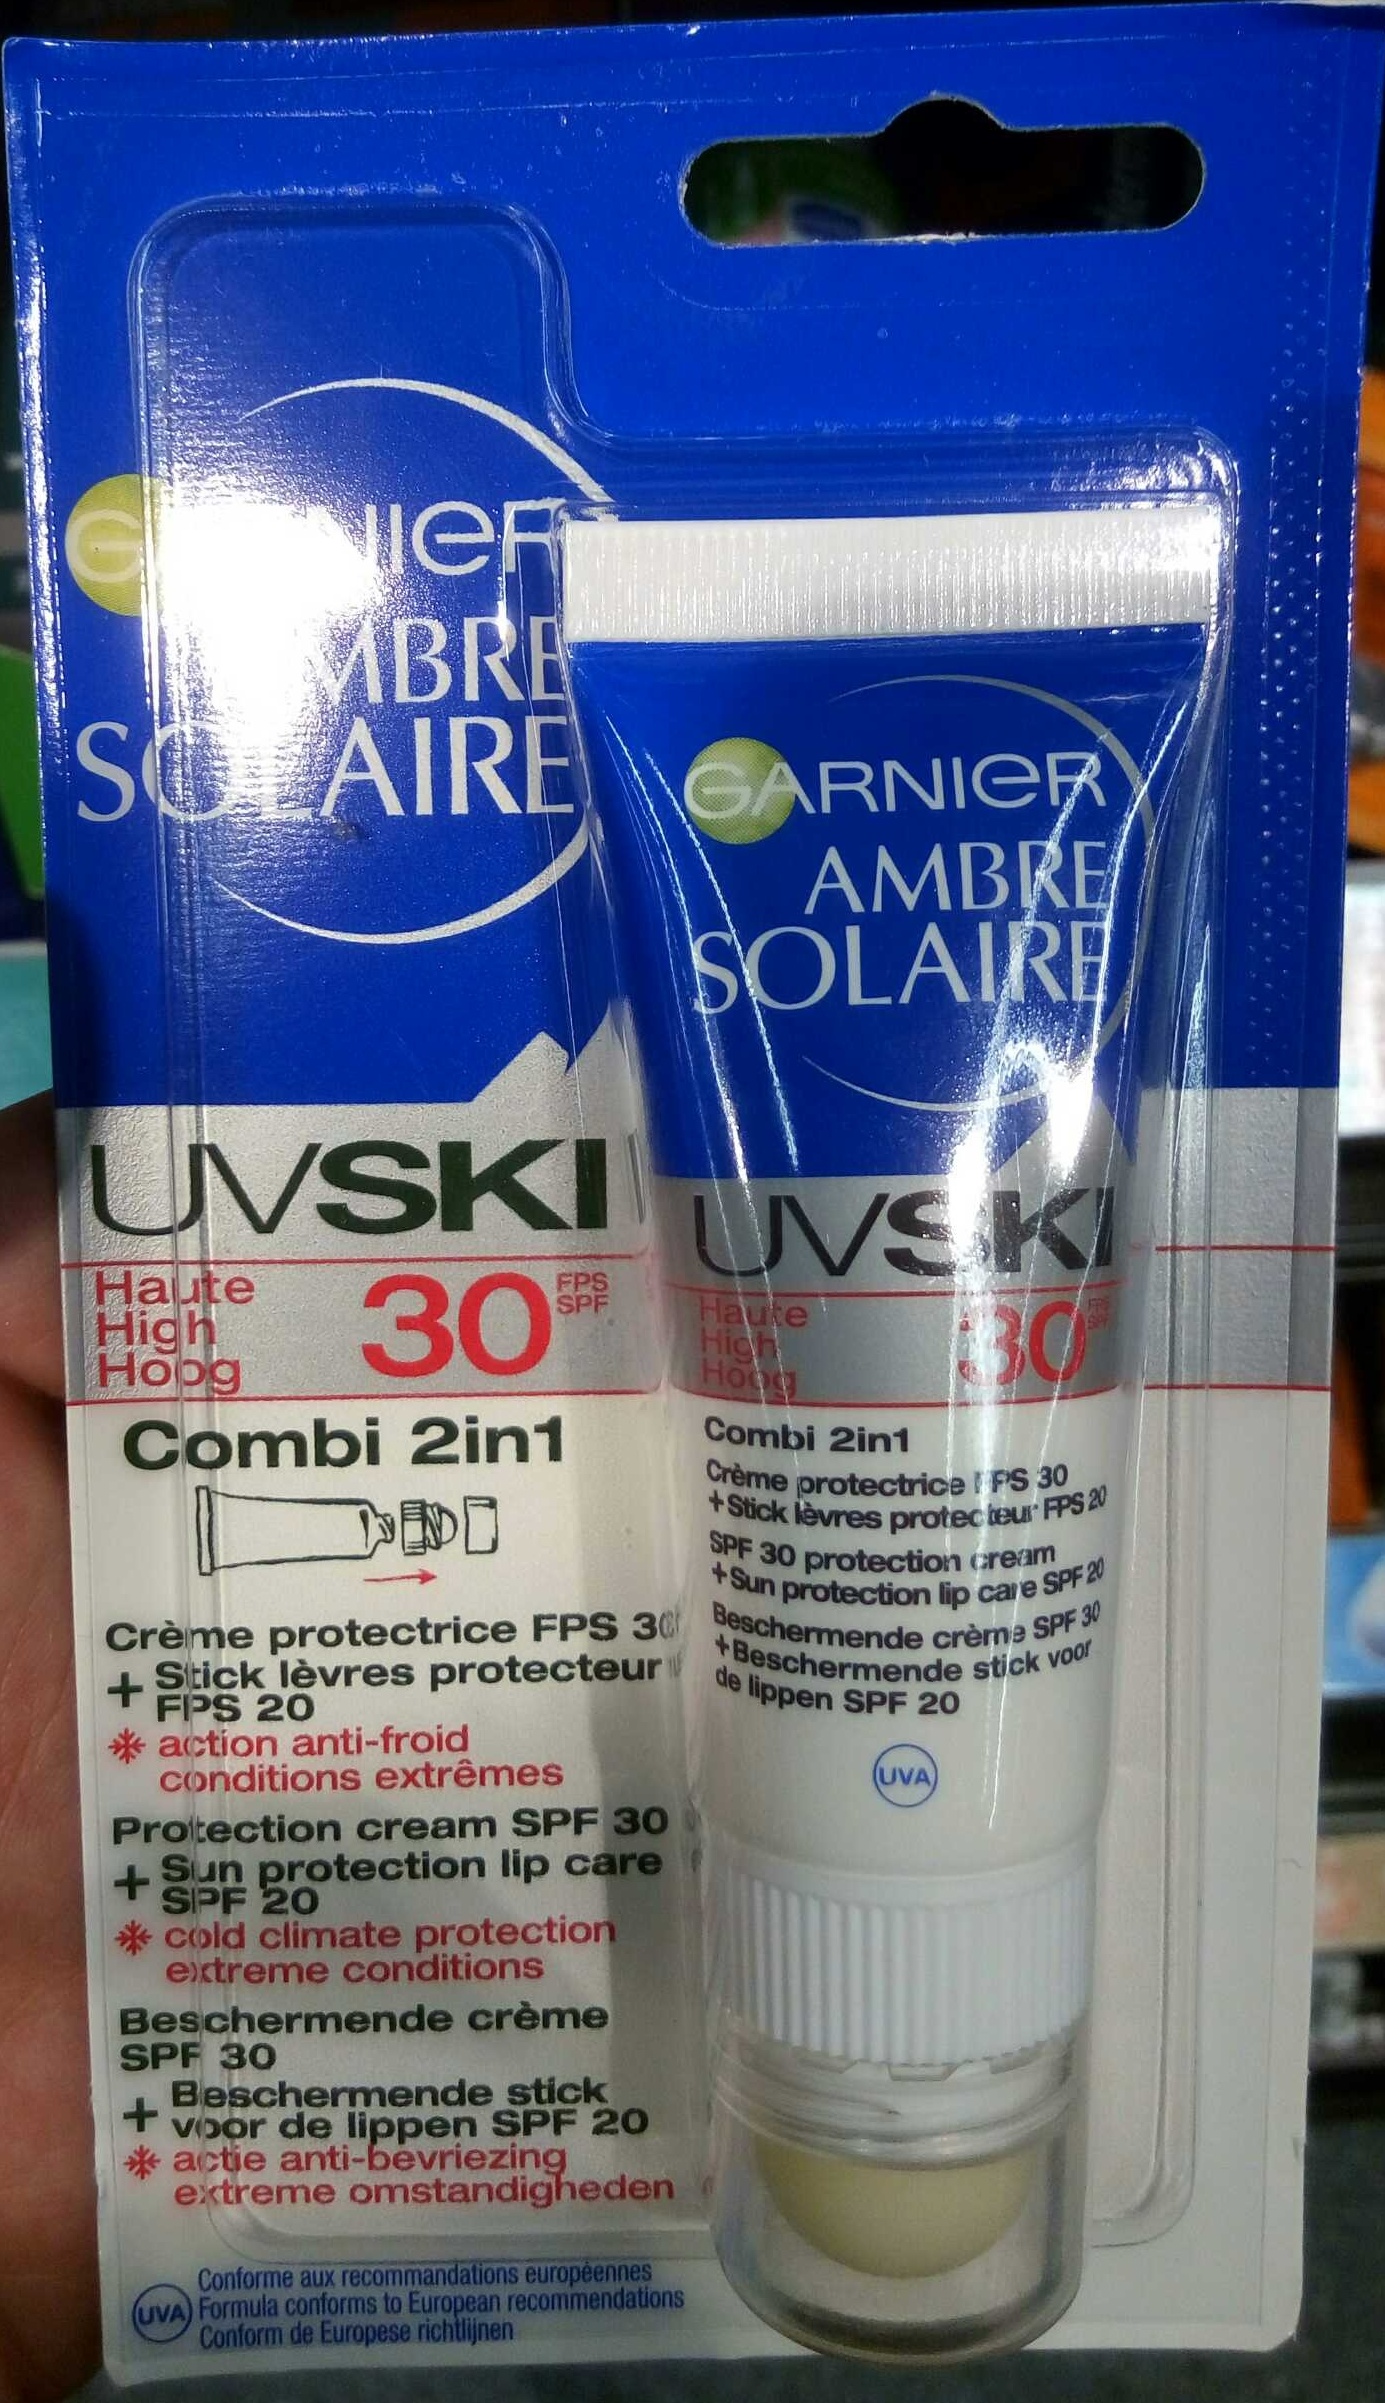 Ambre Solaire UV Ski 30 Combi 2in1 Crème protectrice + Stick lèvres protecteur - उत्पाद - fr